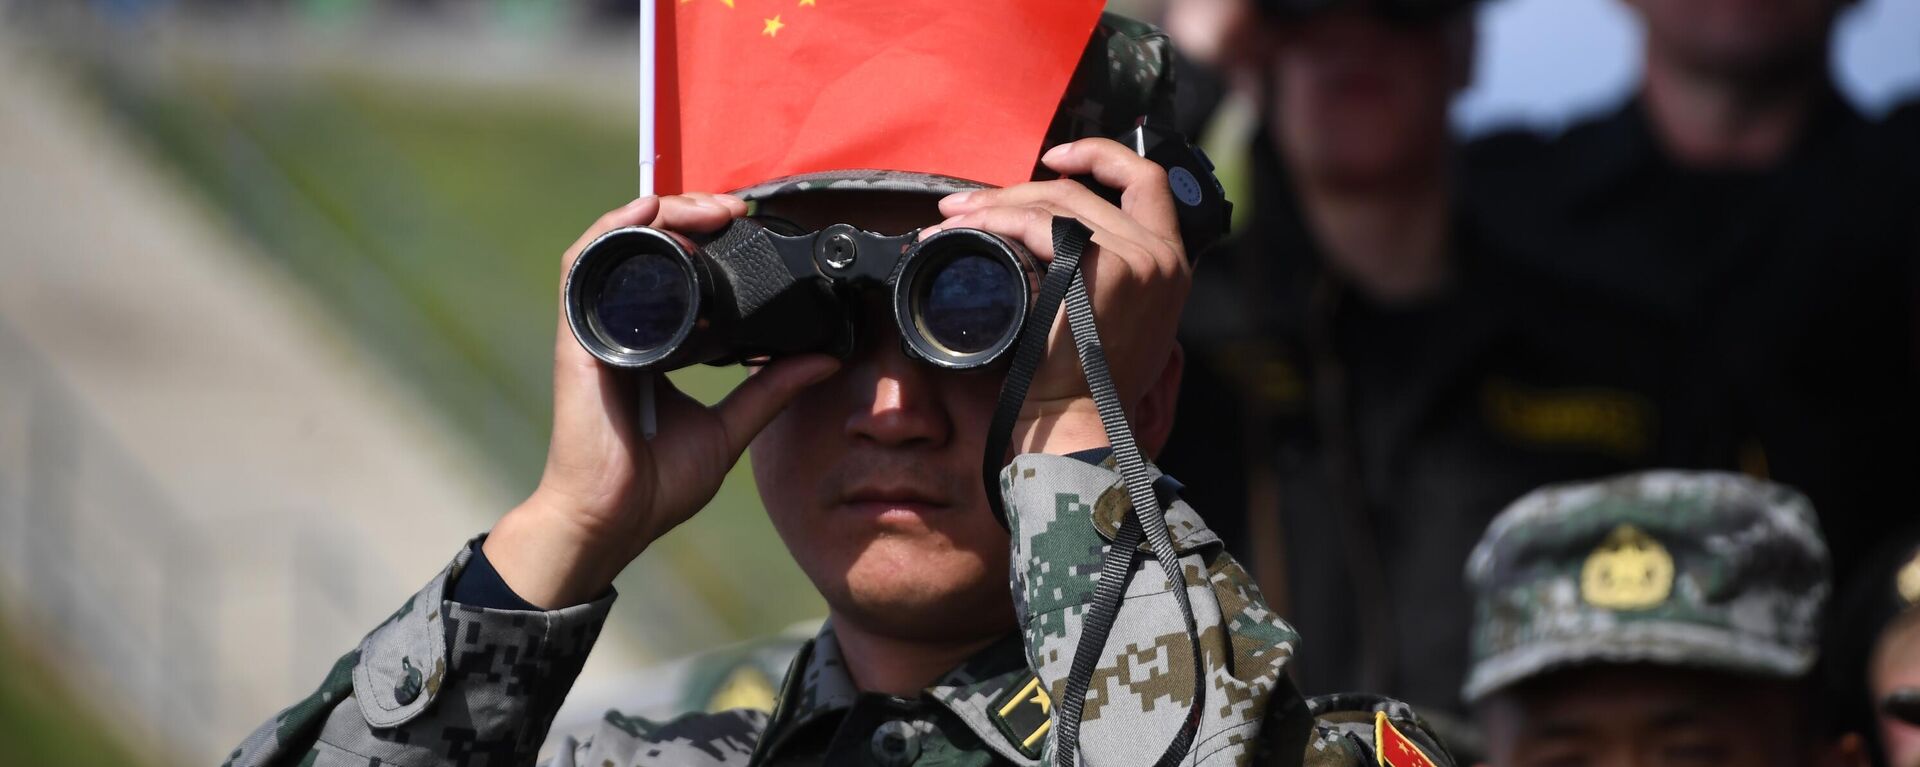 Военнослужащий армии Китая наблюдает в бинокль за соревнованиями  - Sputnik Таджикистан, 1920, 13.10.2021